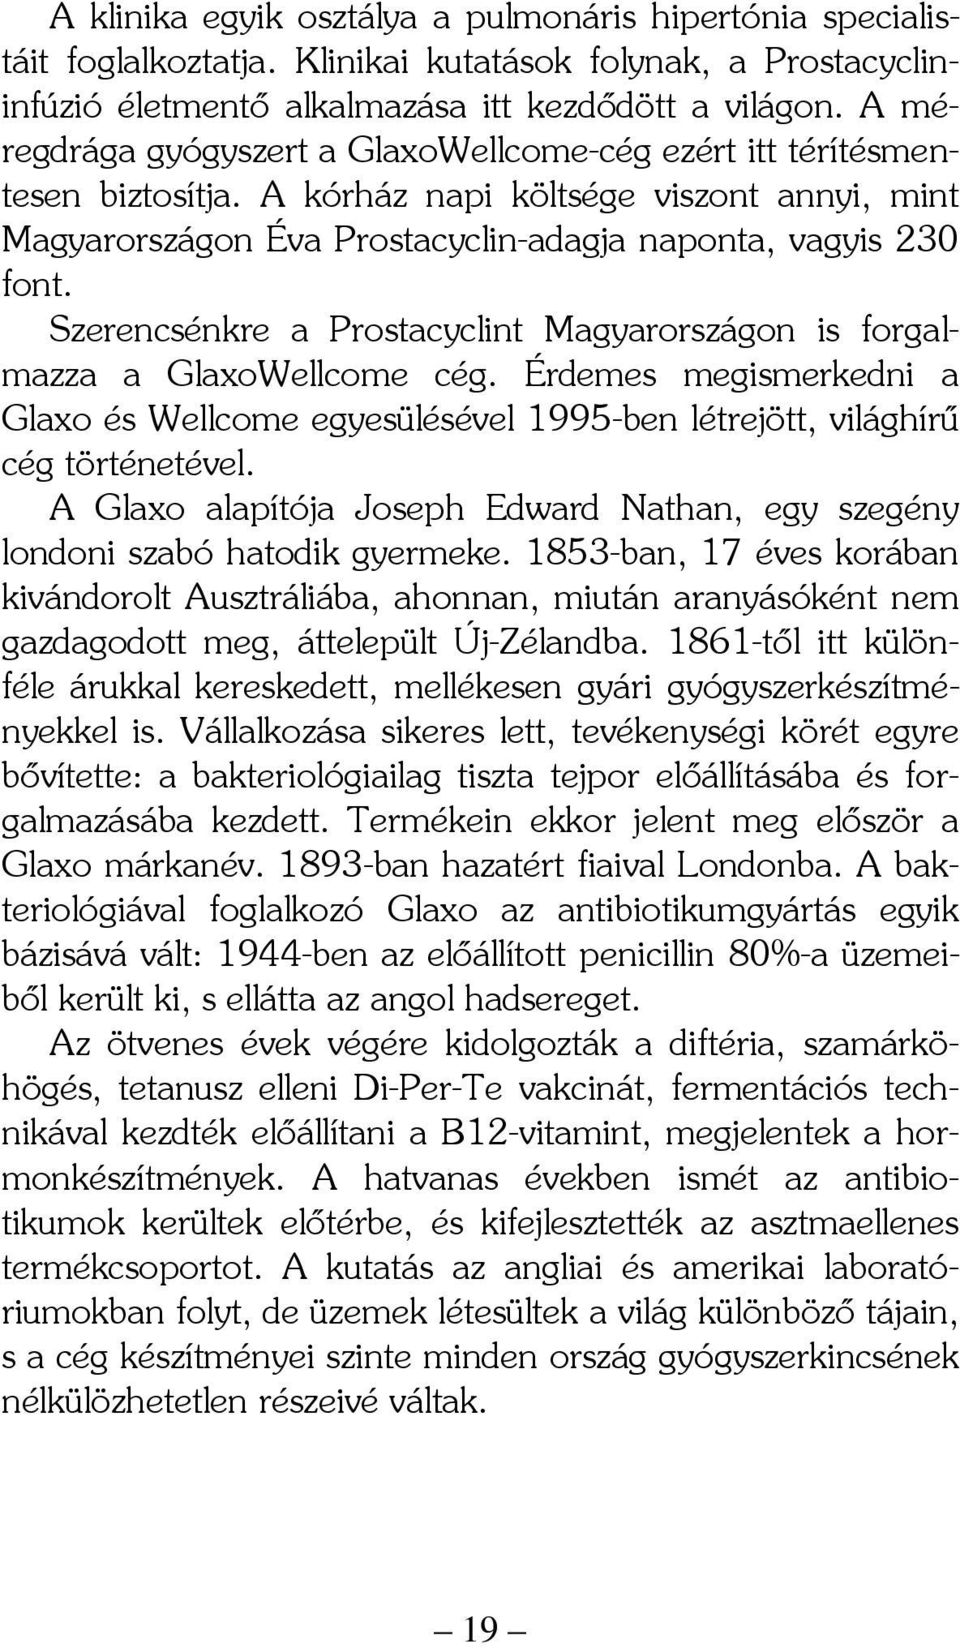 Szerencsénkre a Prostacyclint Magyarországon is forgalmazza a GlaxoWellcome cég. Érdemes megismerkedni a Glaxo és Wellcome egyesülésével 1995-ben létrejött, világhírű cég történetével.